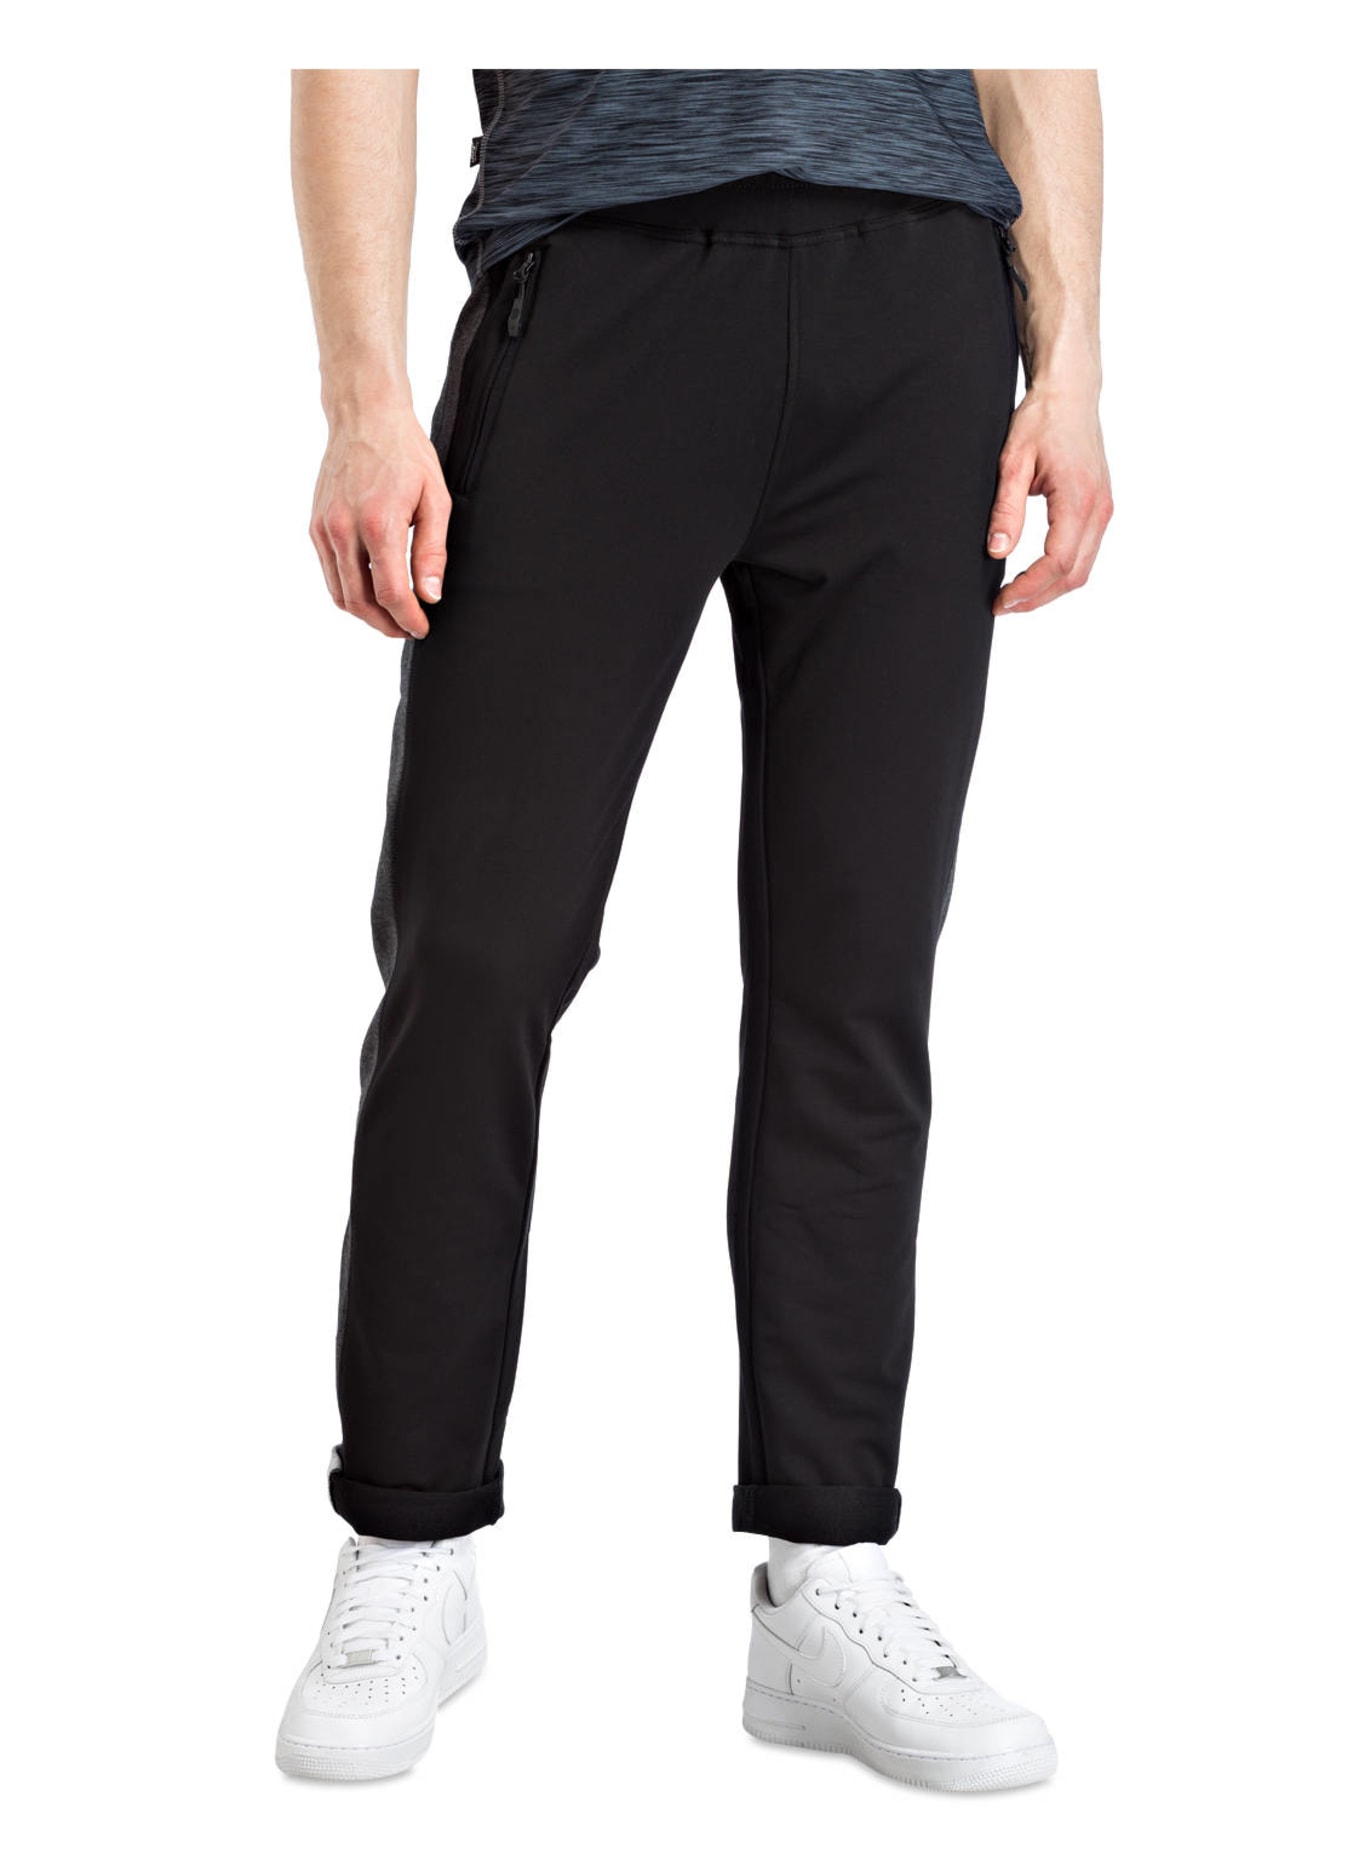 JOY sportswear Sweatpants FERNANDO, Color: BLACK (Image 2)